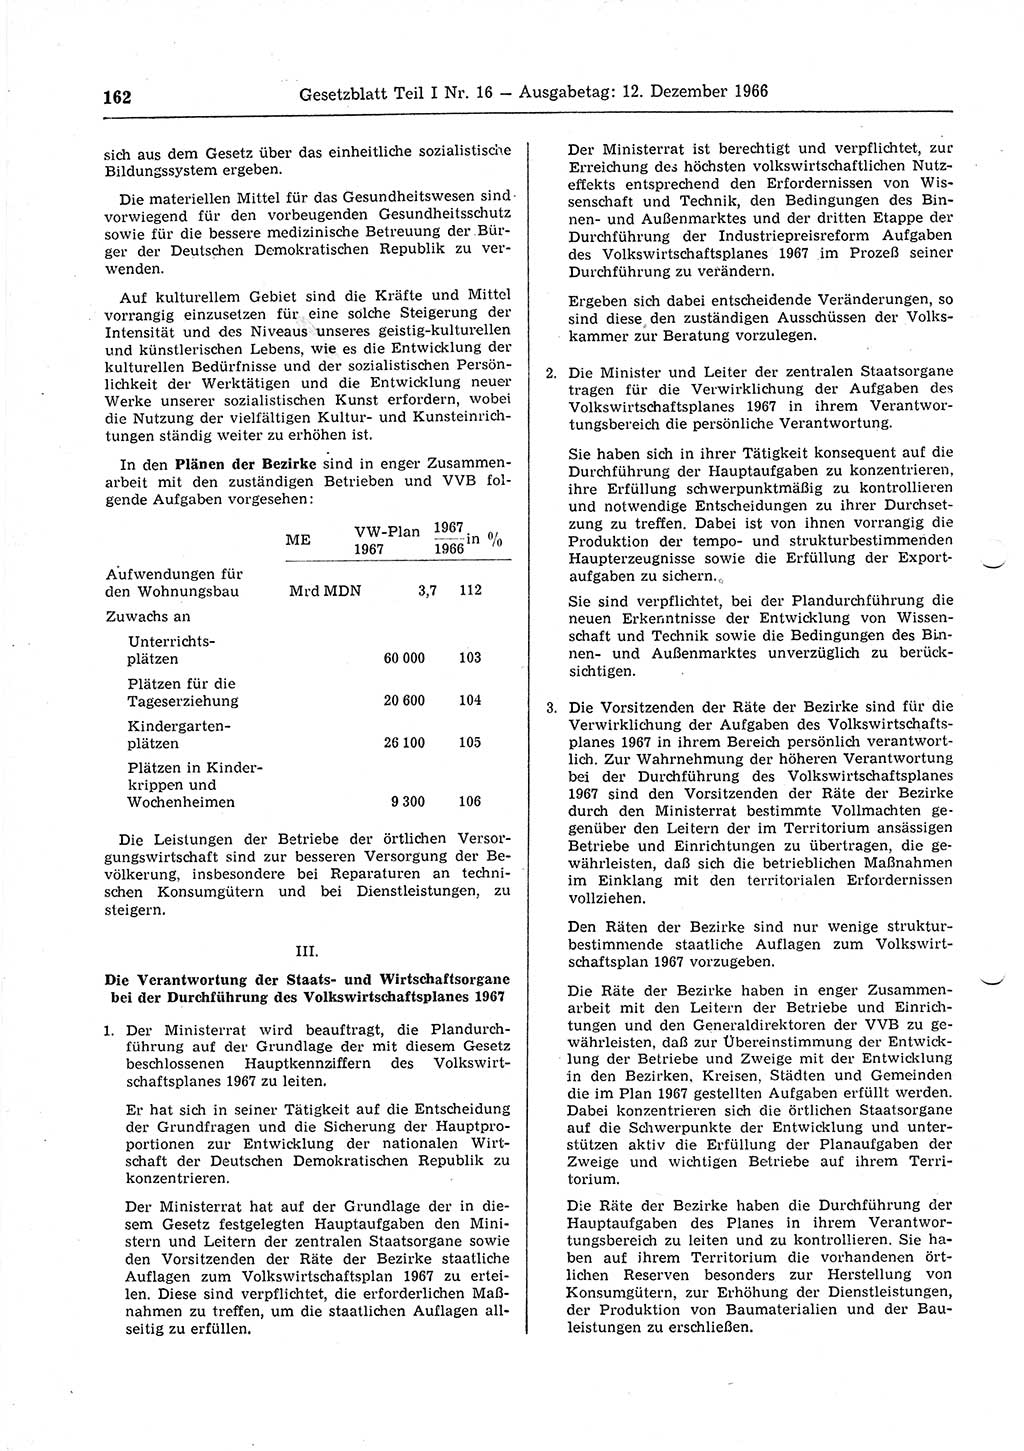 Gesetzblatt (GBl.) der Deutschen Demokratischen Republik (DDR) Teil Ⅰ 1966, Seite 162 (GBl. DDR Ⅰ 1966, S. 162)